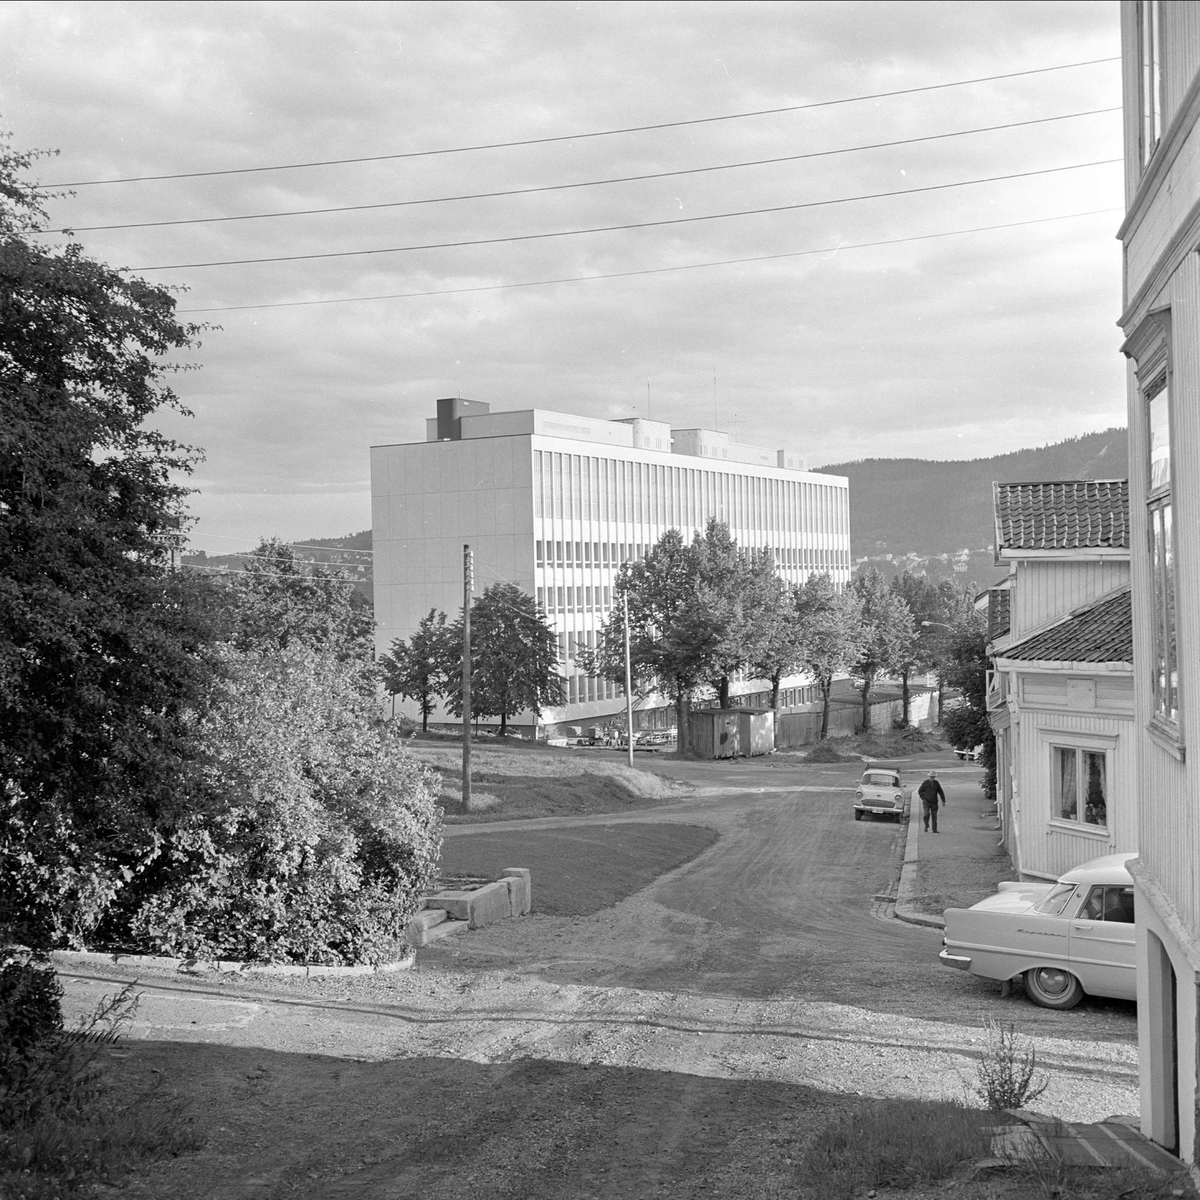 Drammen, august 1962. Drammensdagen. Bygninger, biler og park.